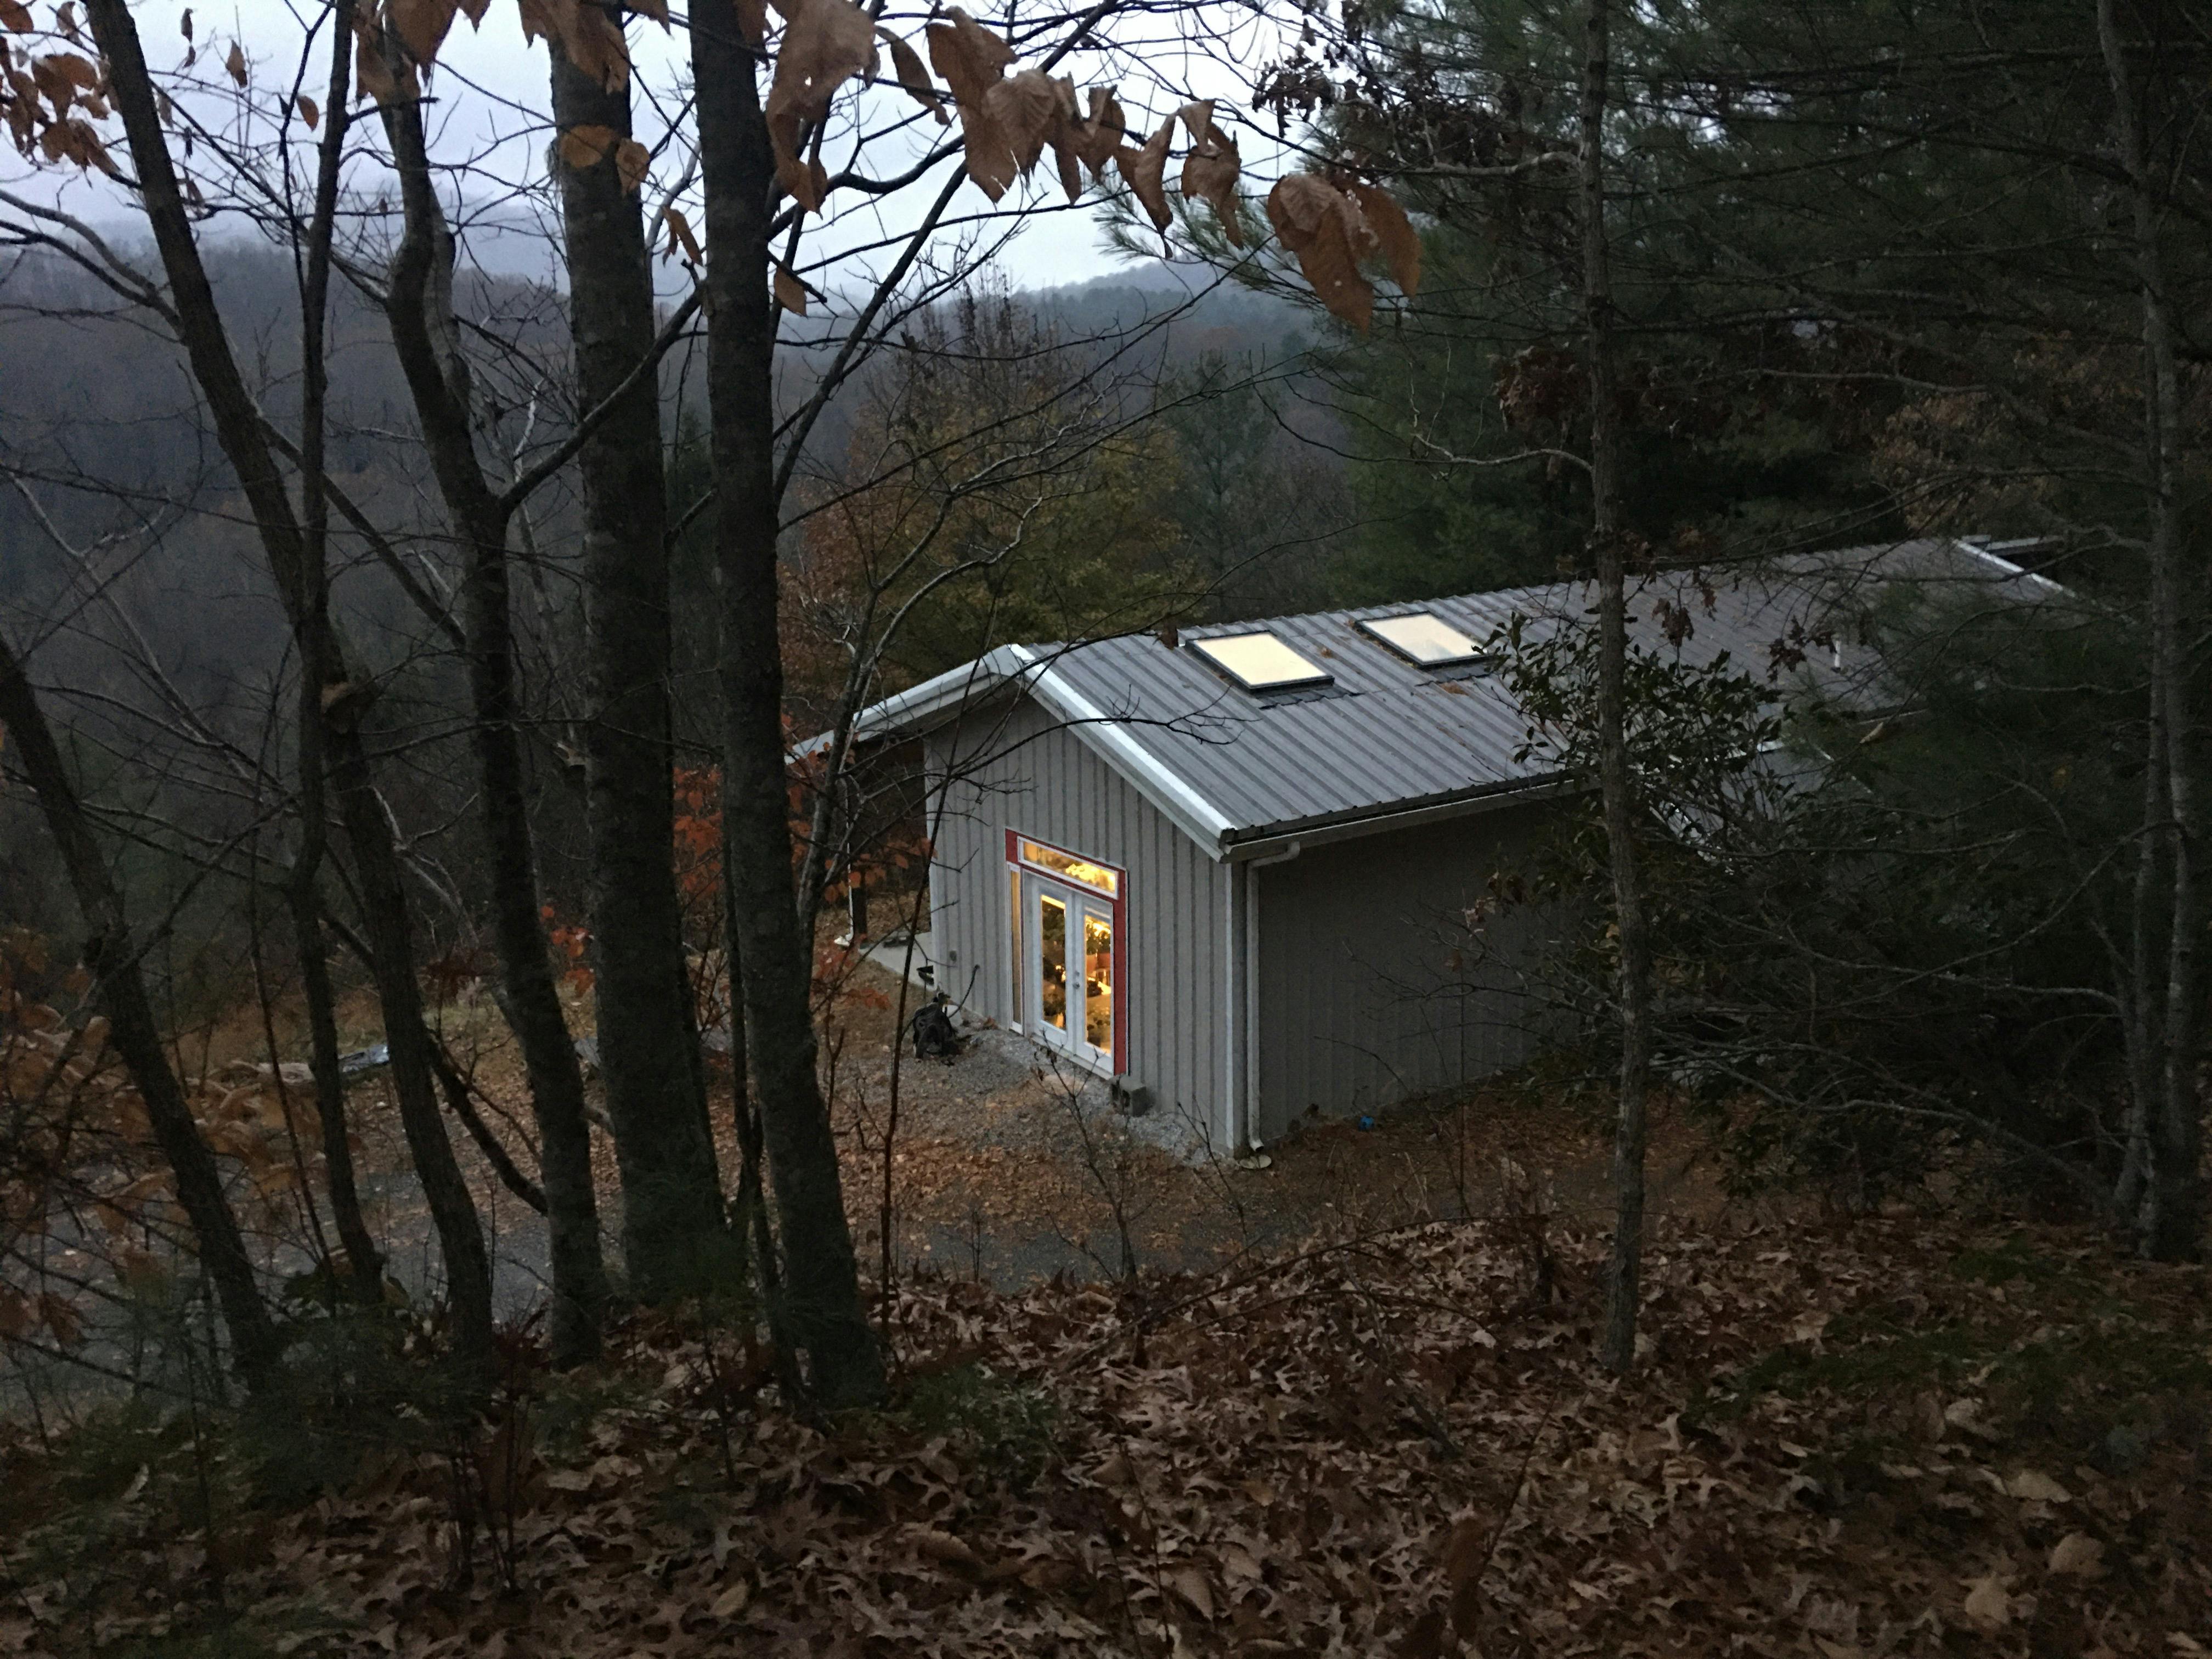 studio nestled in misty woods on hillside at dusk